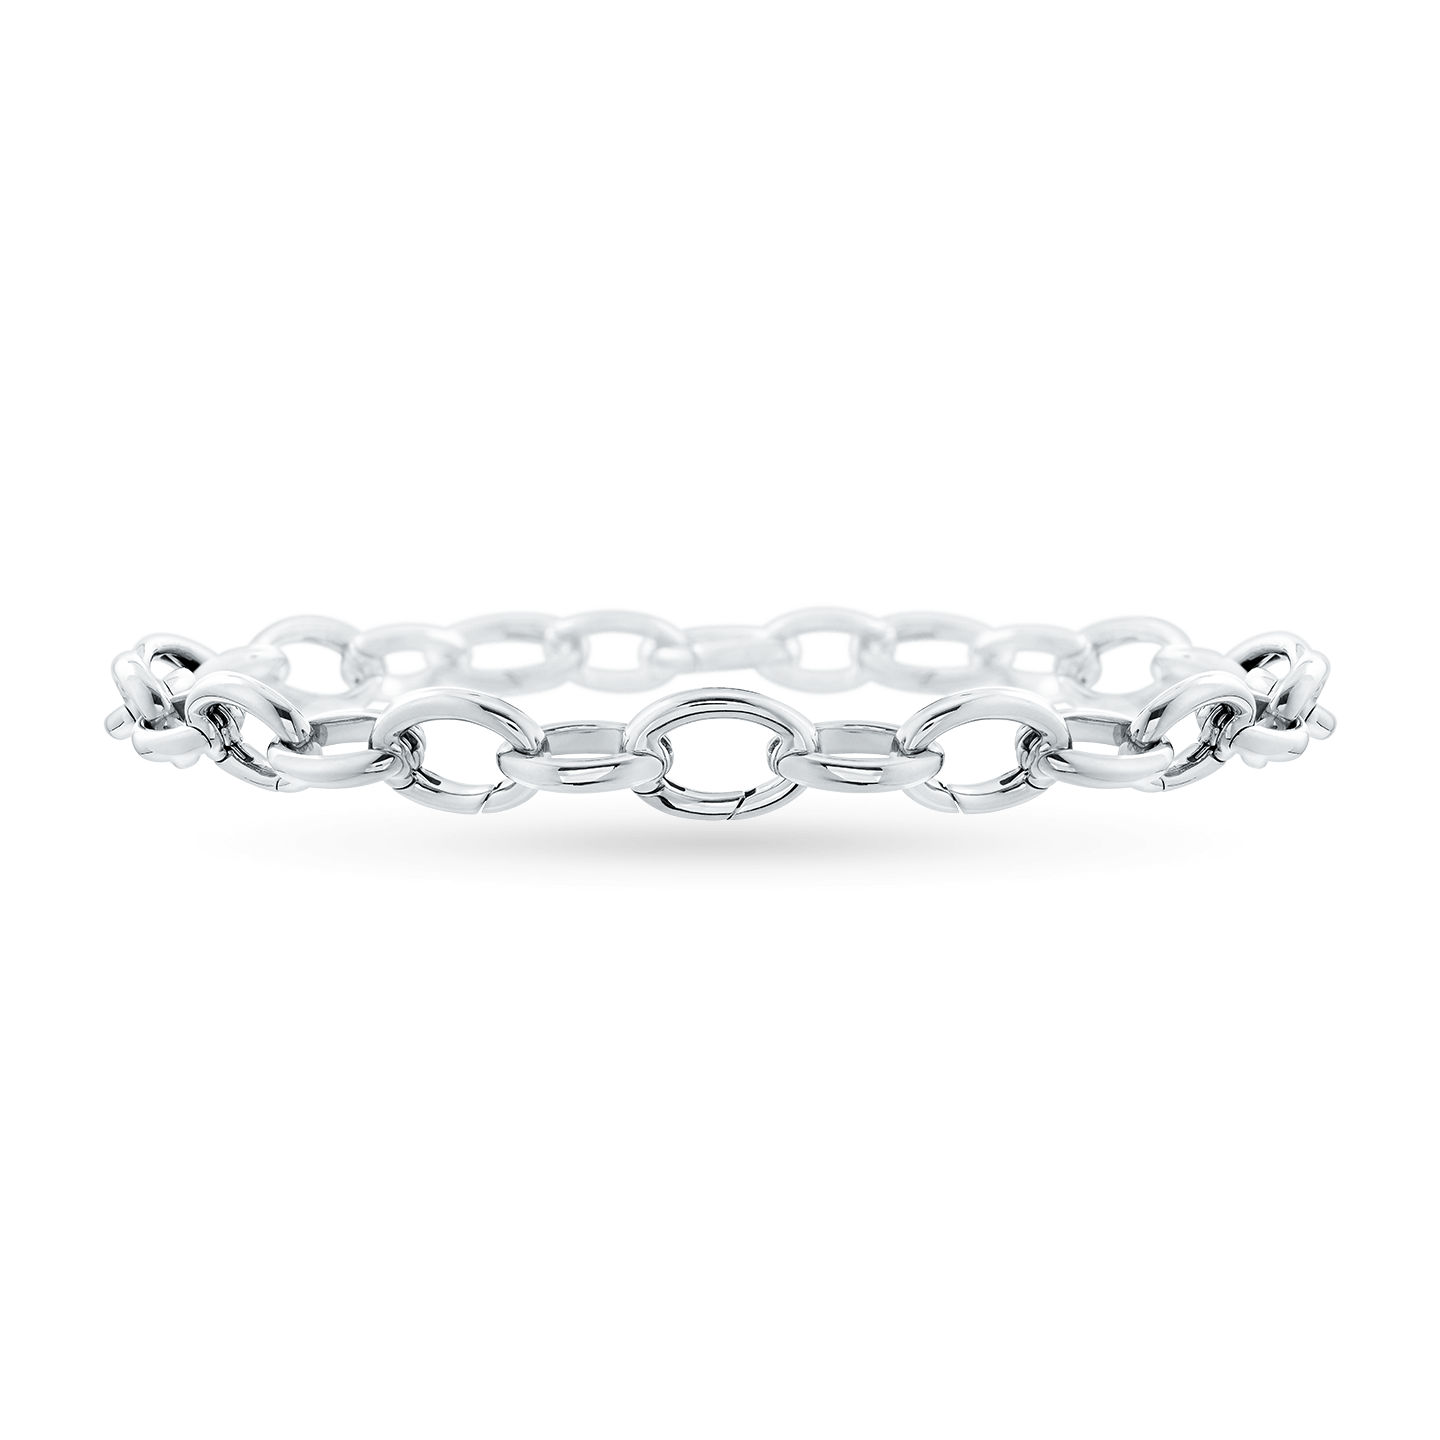 Charm Bracelet, Product Image 1